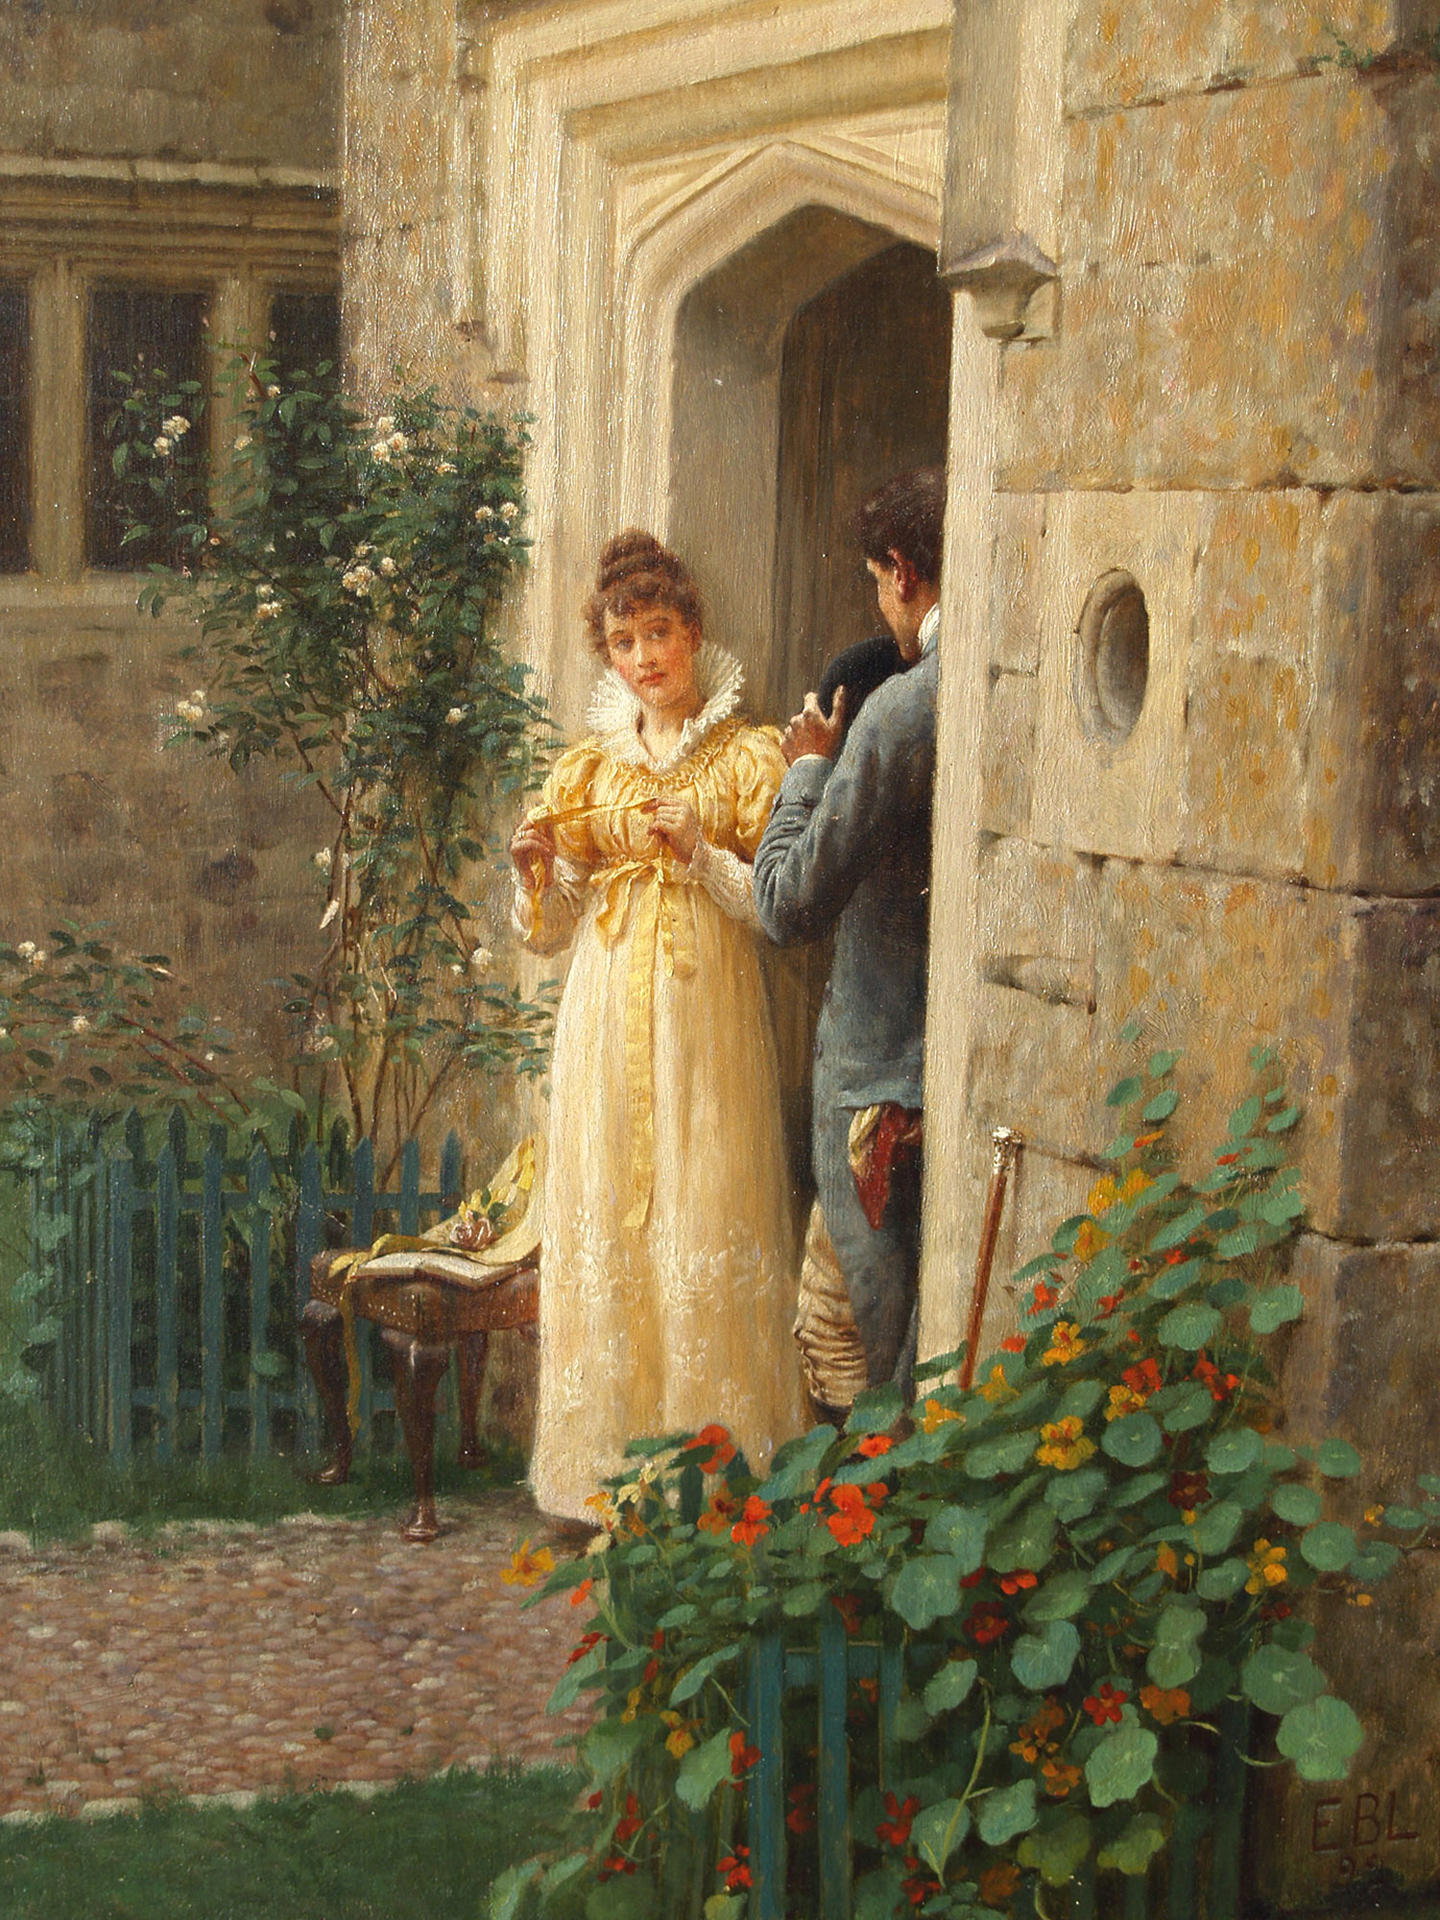 Tranh “The Request,” (tạm dịch: Lời thỉnh cầu) năm 1892, tác phẩm của họa sĩ Edmund Blair Leighton. Tranh sơn dầu trên vải canvas. Art Renewal Center. (Ảnh: Tài sản công)